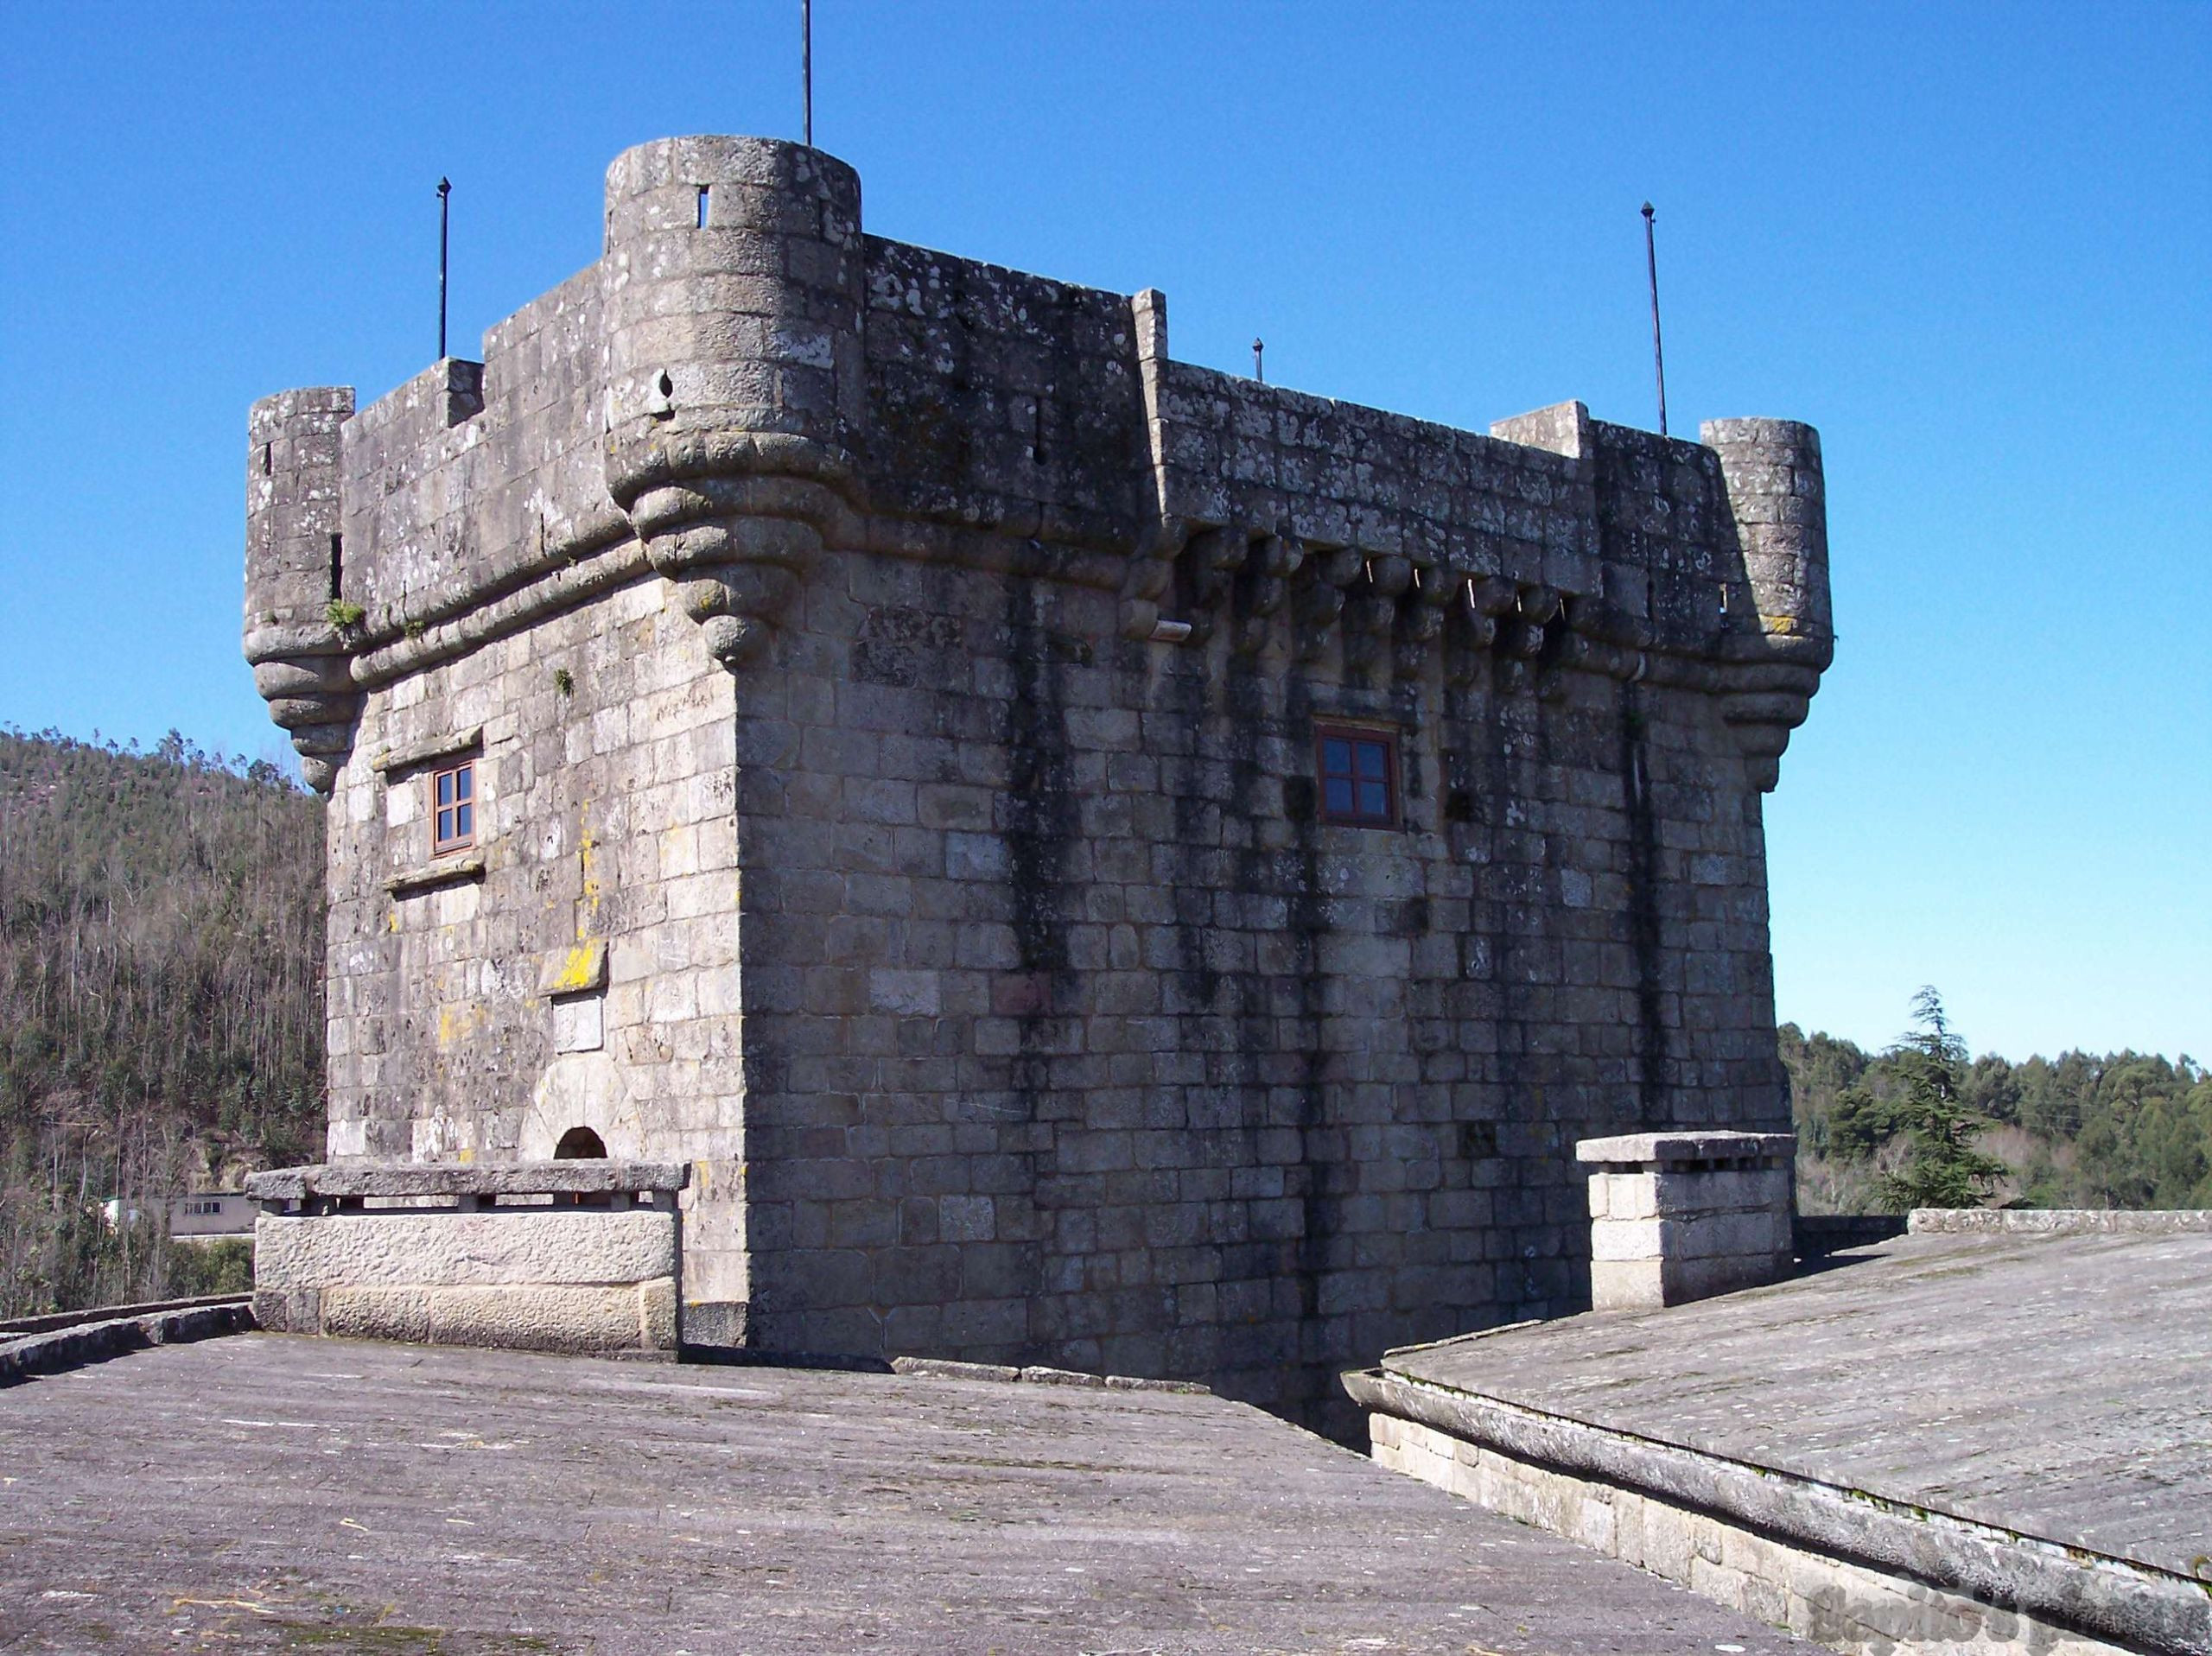 Vista de la torre del homenaje del Castillo de Sobroso.